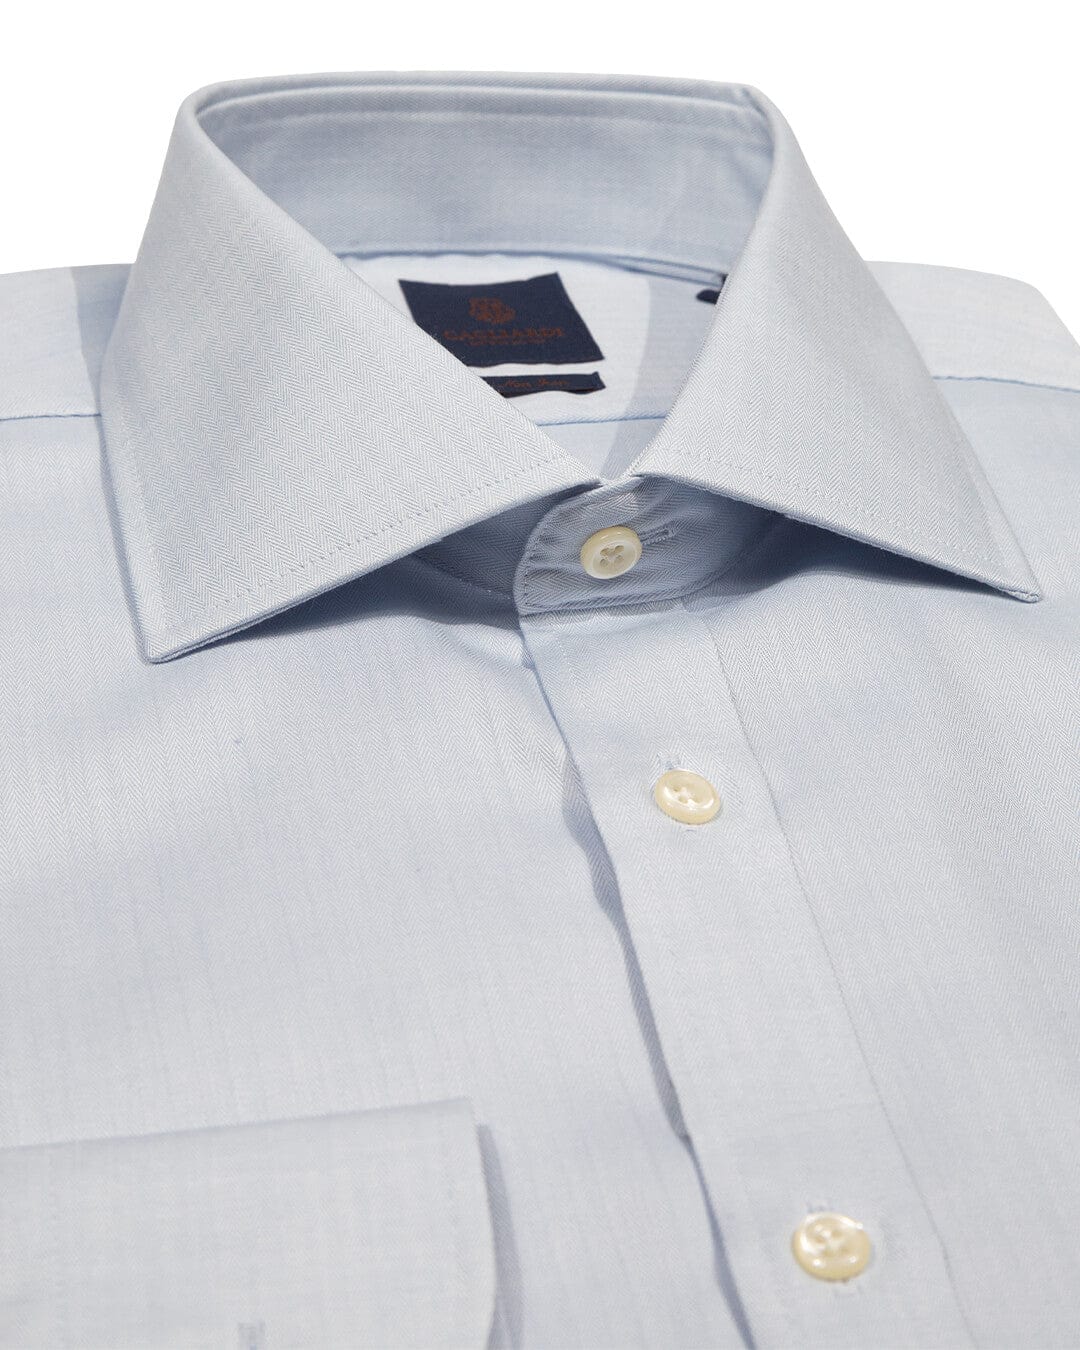 Gagliardi Shirts Gagliardi Sky Herringbone Cutaway Collar Single Cuffed Slim-Fit Non-Iron Shirt